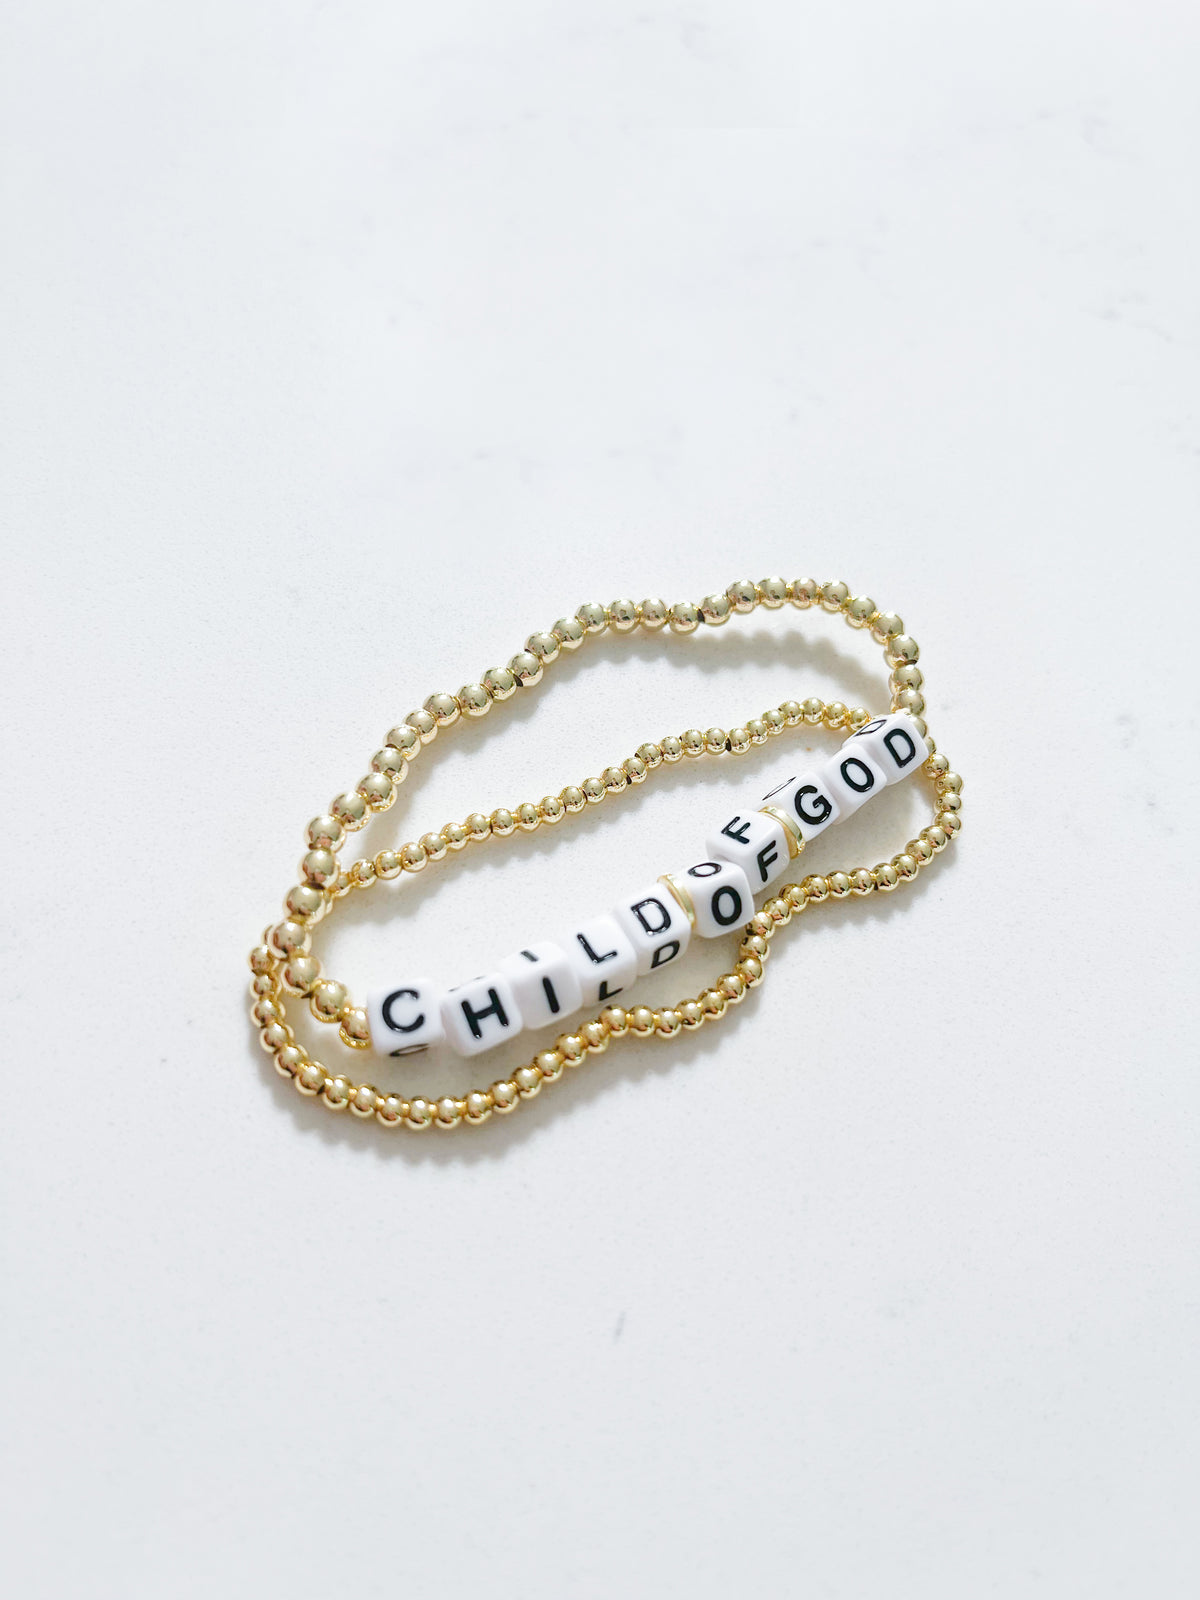 Child of God Bead Bracelets